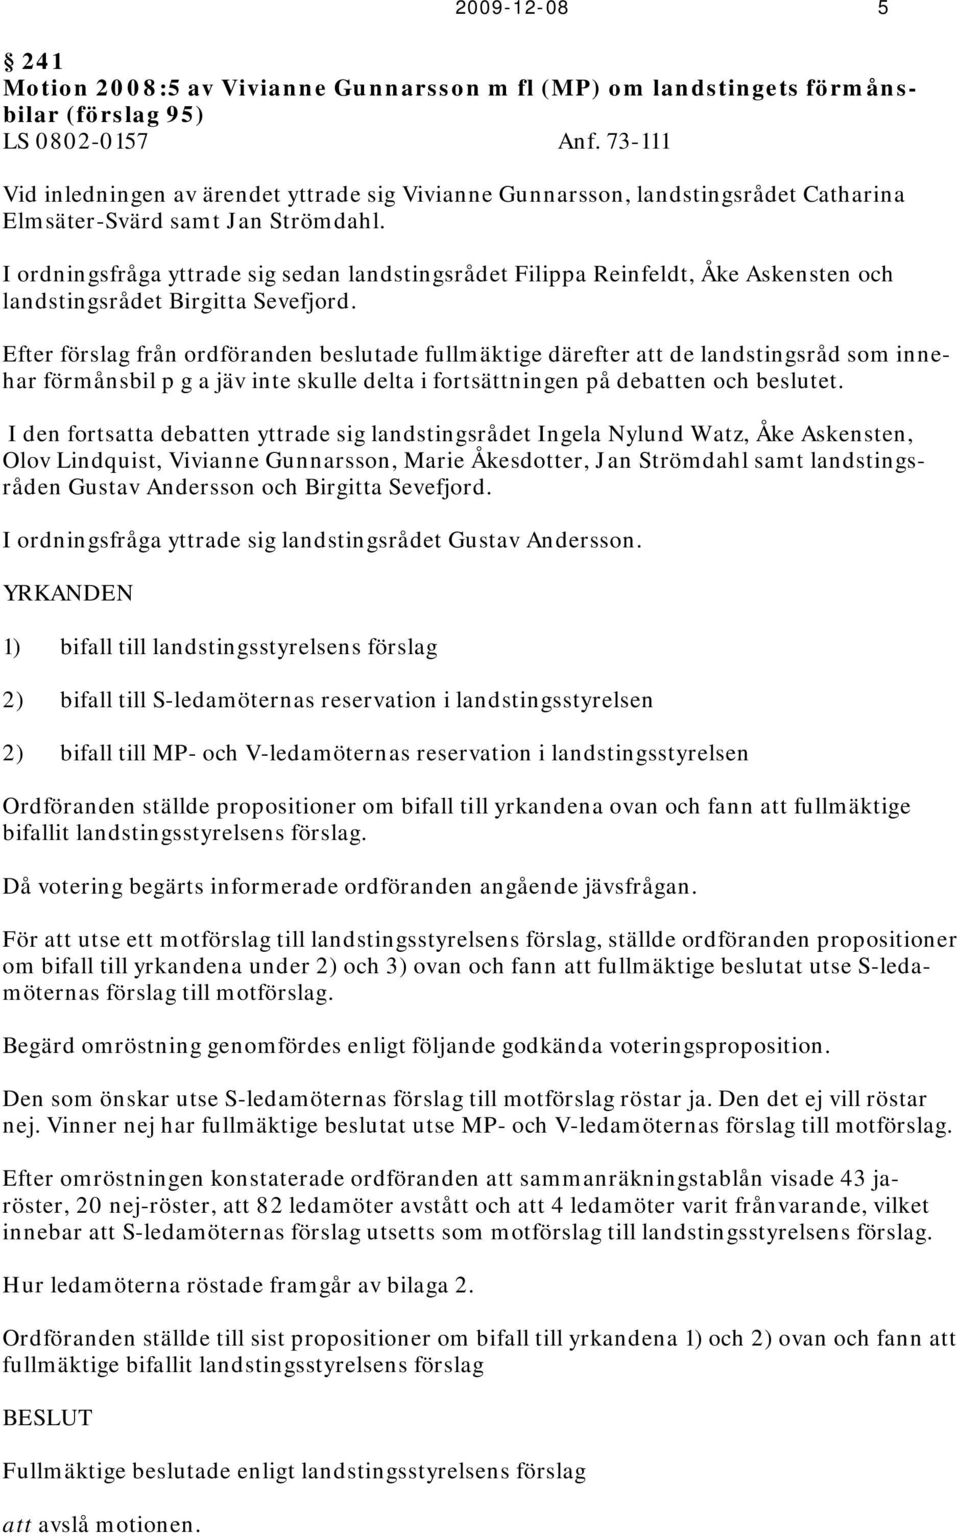 I ordningsfråga yttrade sig sedan landstingsrådet Filippa Reinfeldt, Åke Askensten och landstingsrådet Birgitta Sevefjord.